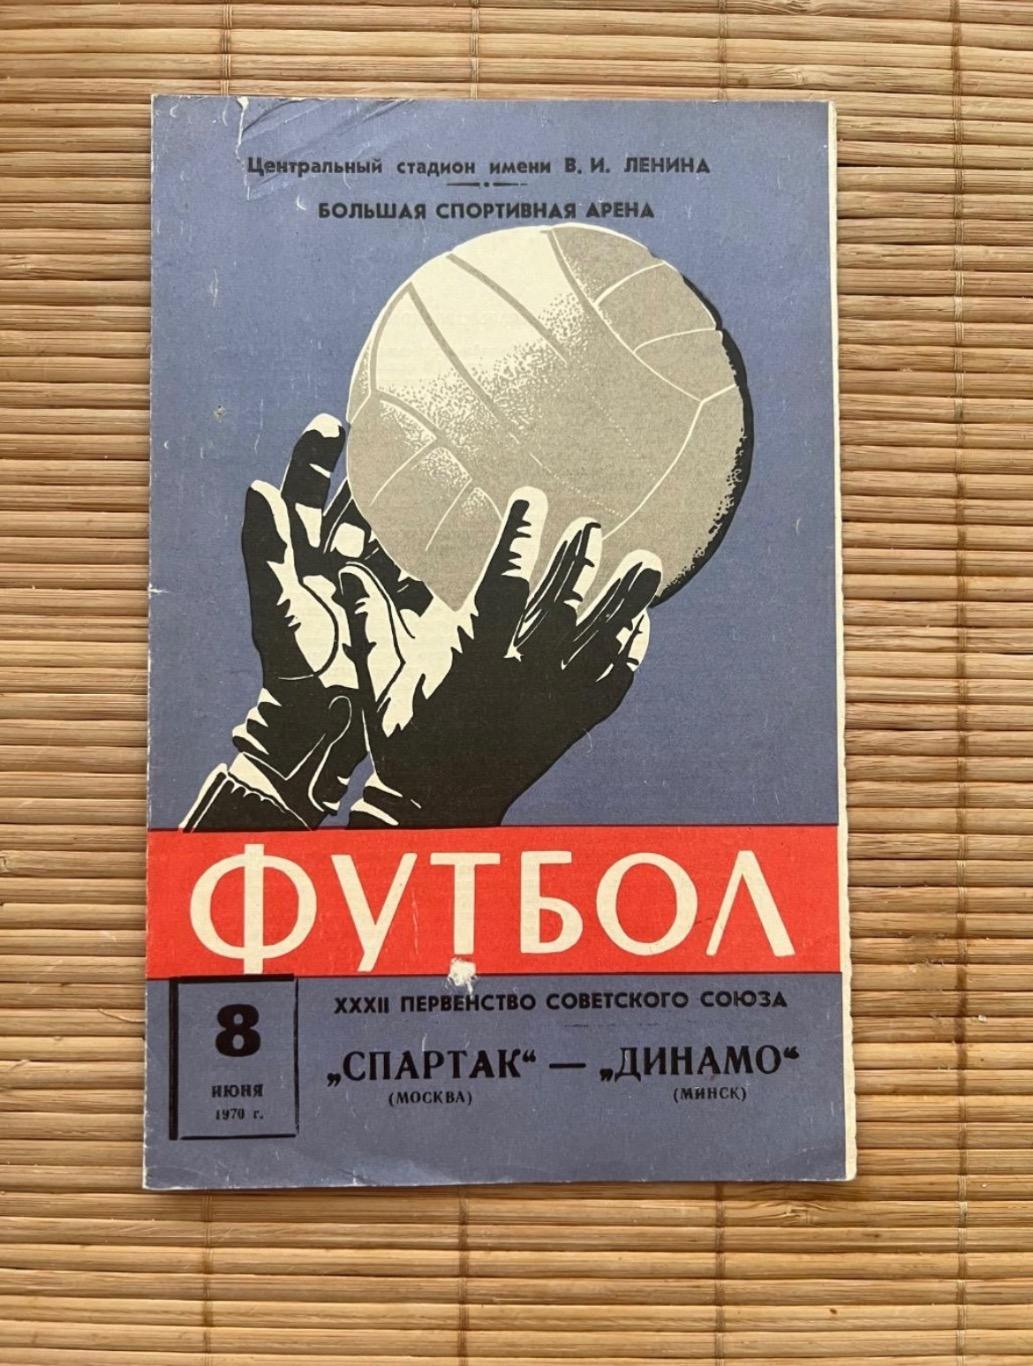 Спартак москва - Динамо минск . 08.06.1970